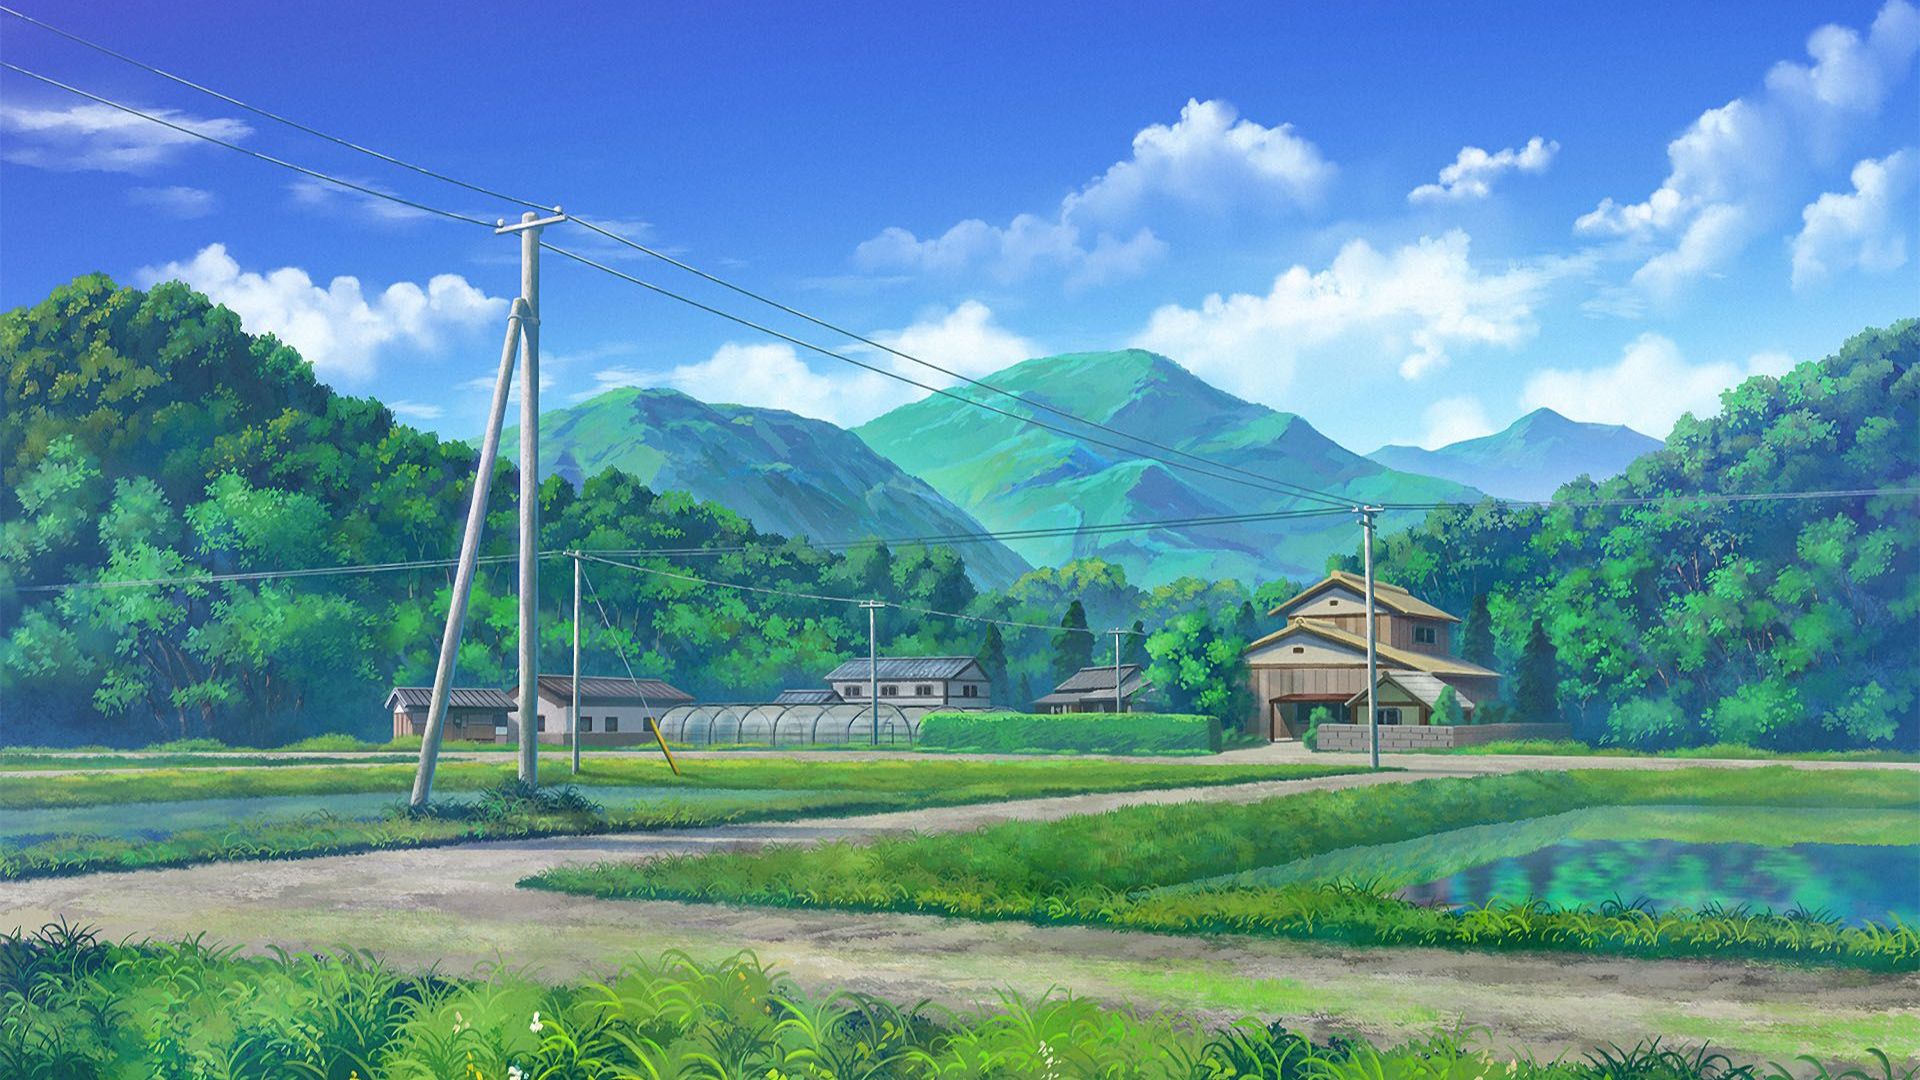 Hãy khám phá một thế giới tuyệt vời của anime đầy màu sắc với cảnh quan đặc biệt. Những mảnh đất xanh, núi non đầy huyền bí và những dòng sông chảy trôi êm đềm. Đây sẽ là một trải nghiệm tuyệt vời cho ai đam mê anime và cảnh đẹp thiên nhiên.